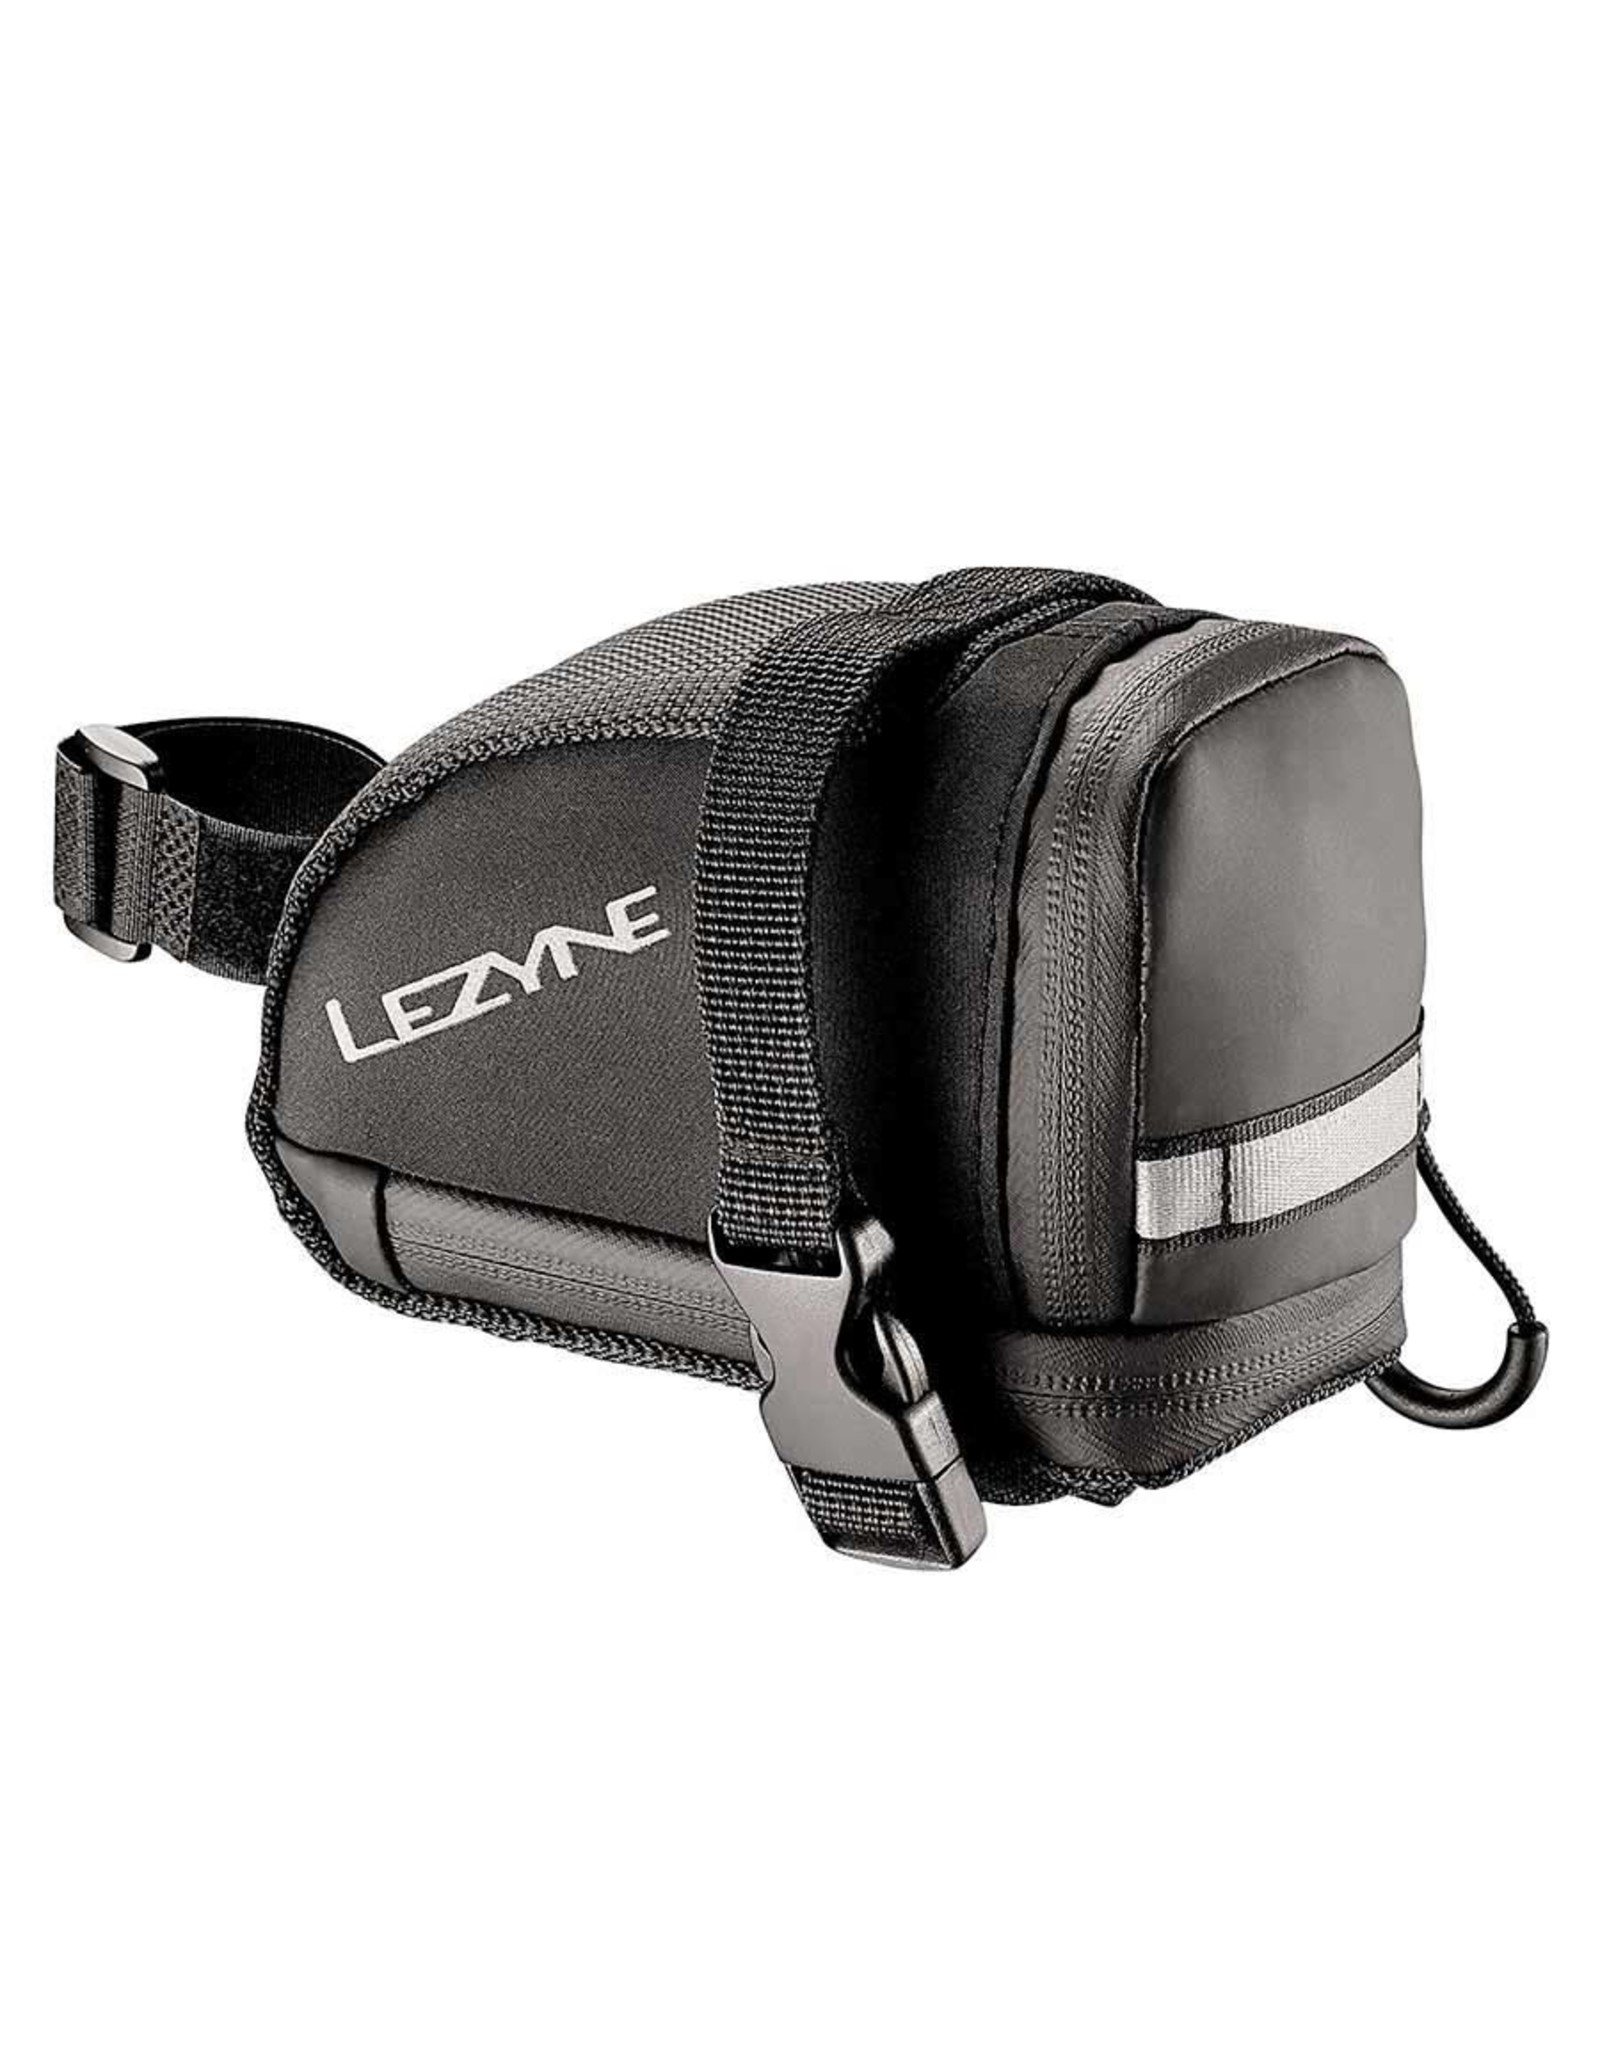 Lezyne Lezyne - EX-Caddy, Seat Bag, 0.8L, Black